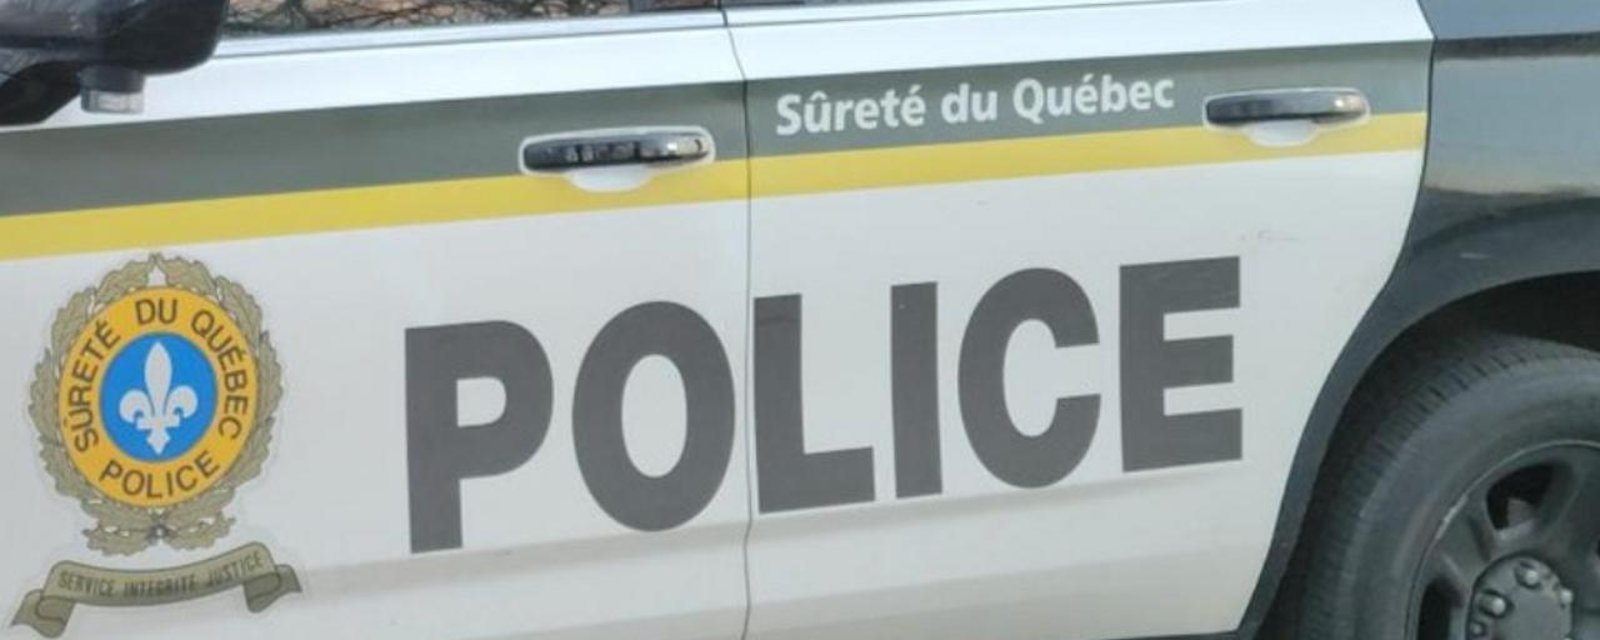 Un homme attaque une voiture de la Sûreté du Québec à coups de scie à chaîne.